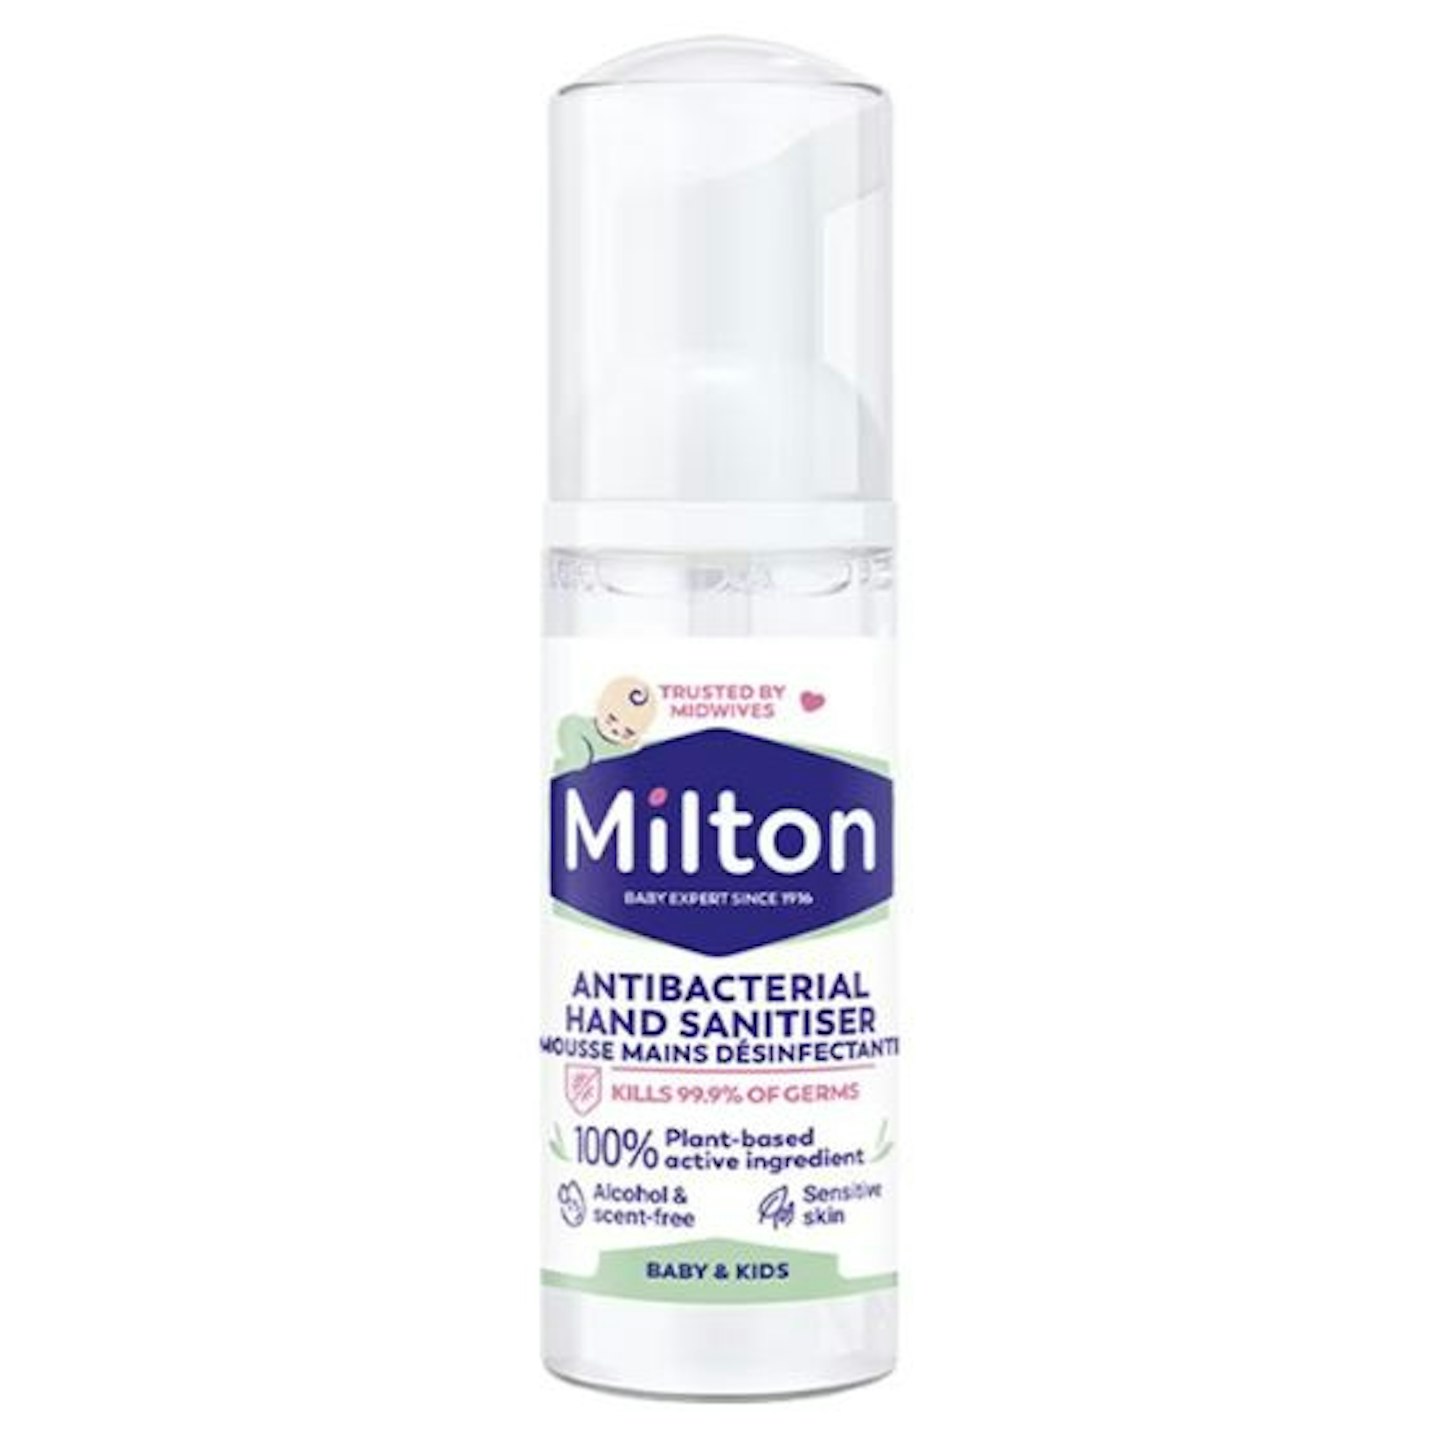 Milton Hand Sanitiser